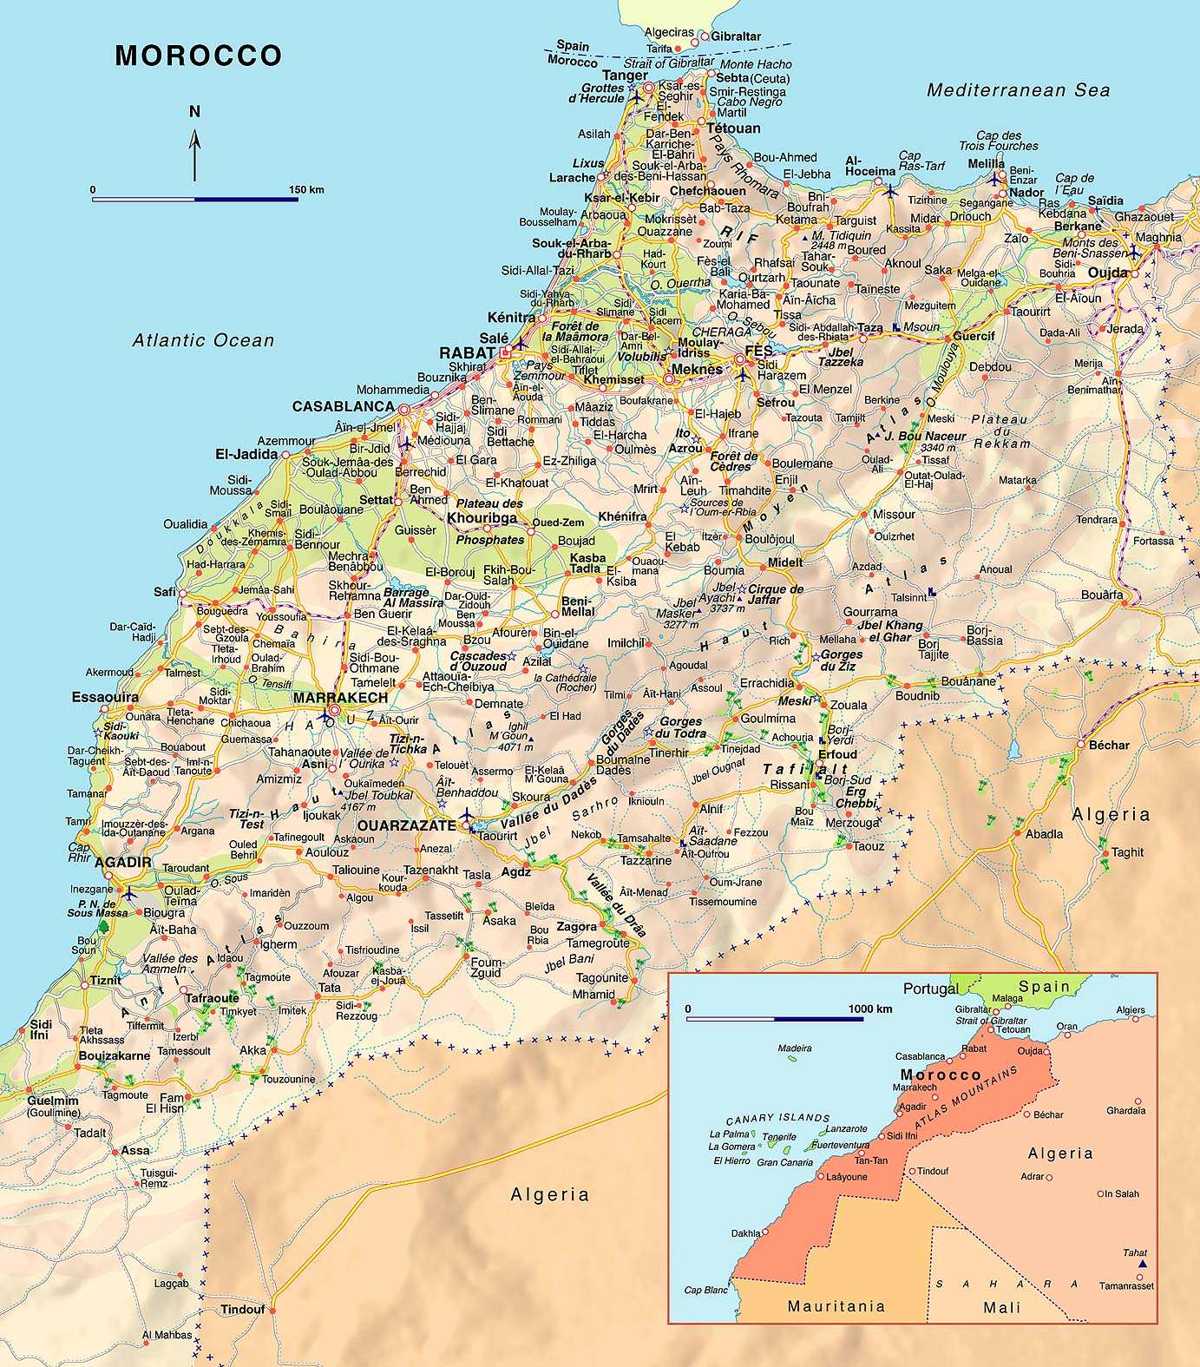 الخريطه المدن المغربية تعالوا تلك خريطة نشاهد